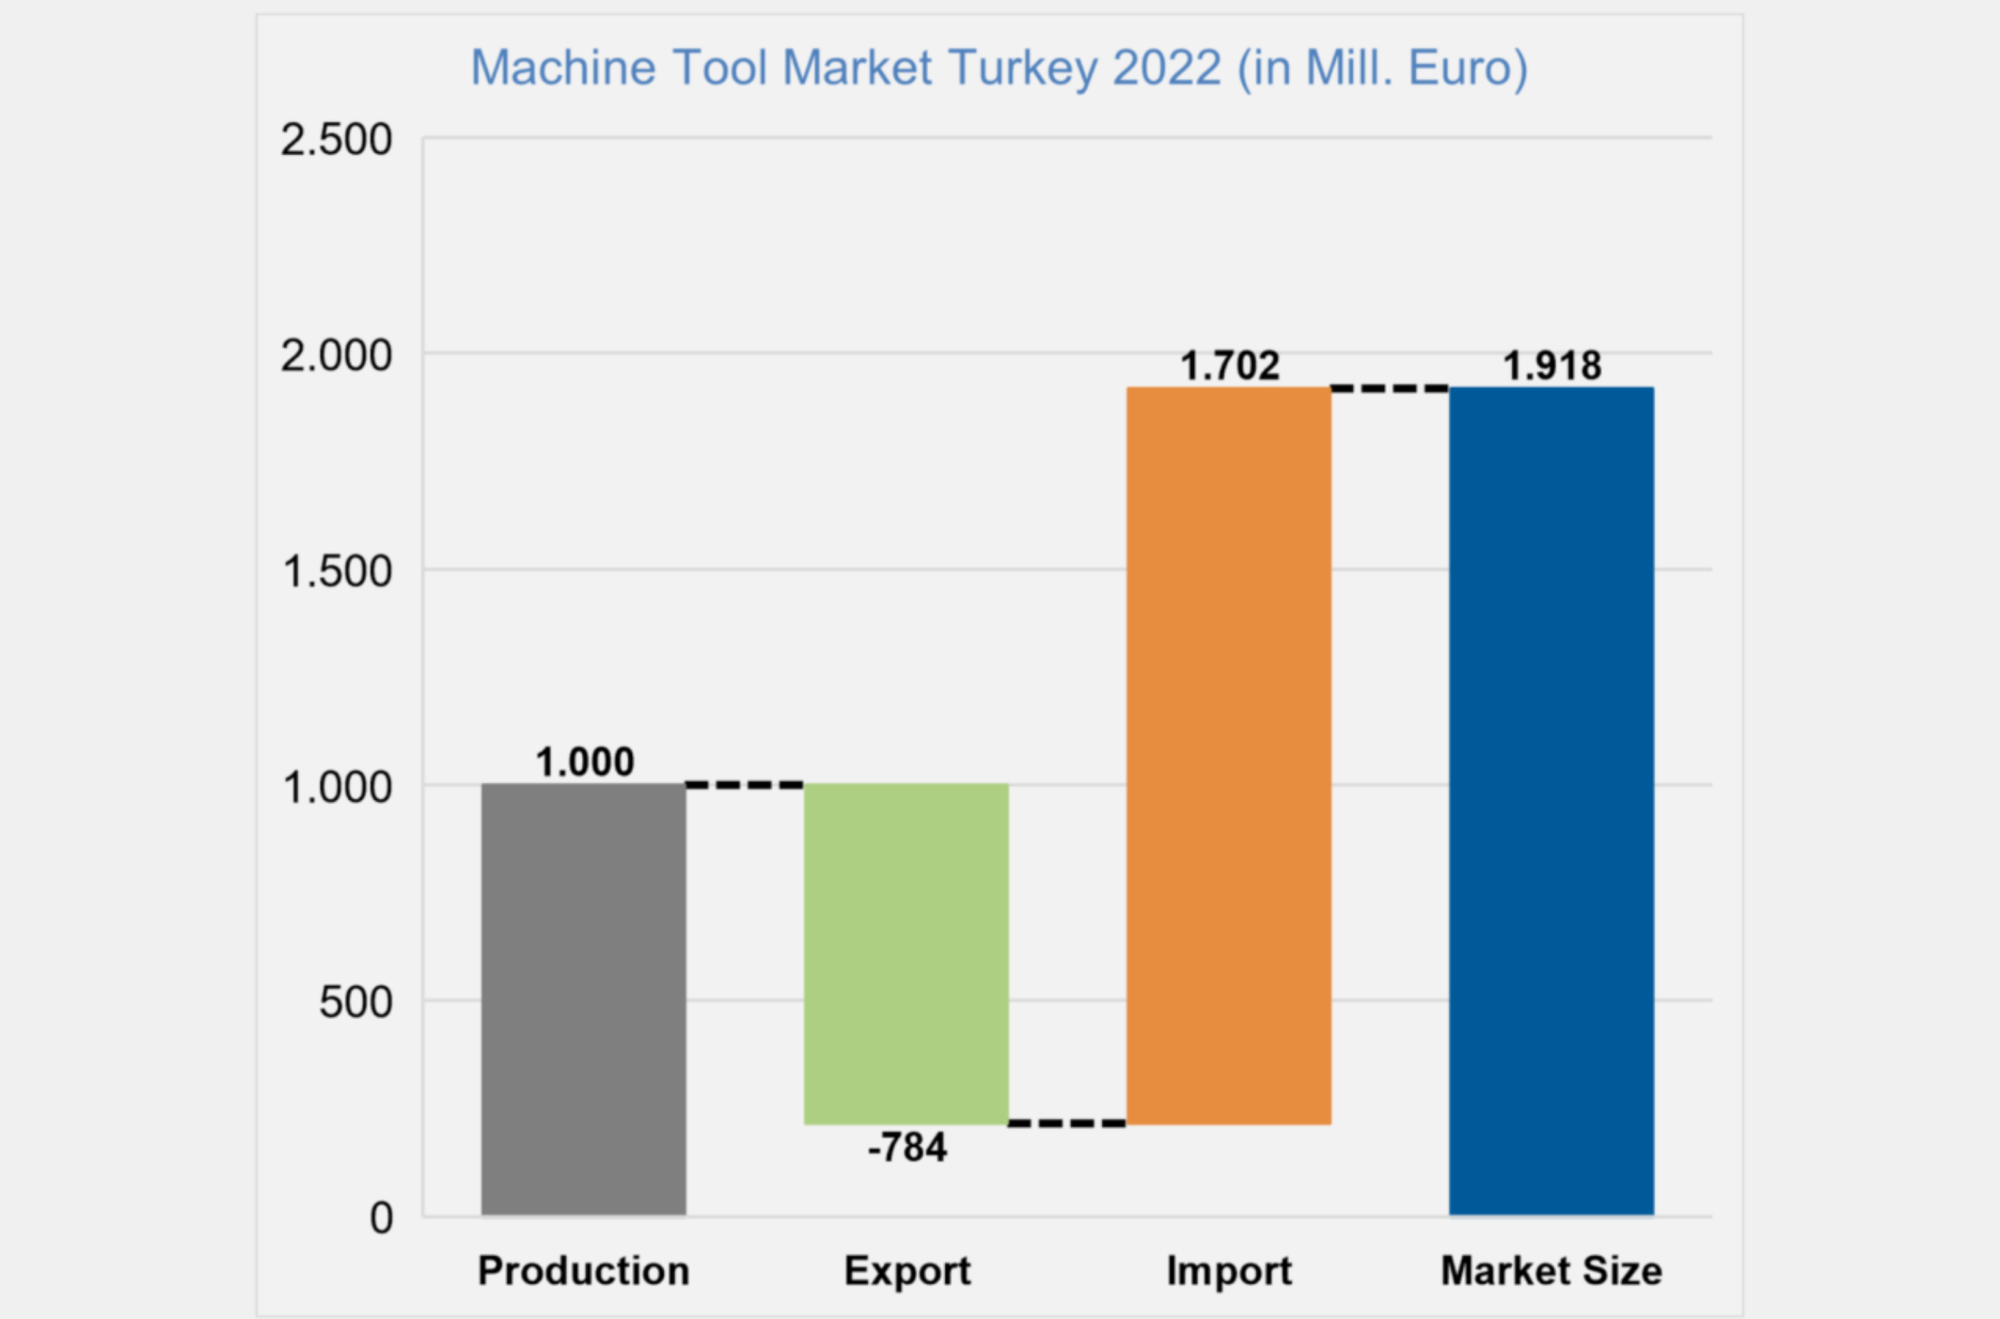 Report | 튀르키예 정밀기계 시장 (Turkiye Machine Tool Industry Analysis)